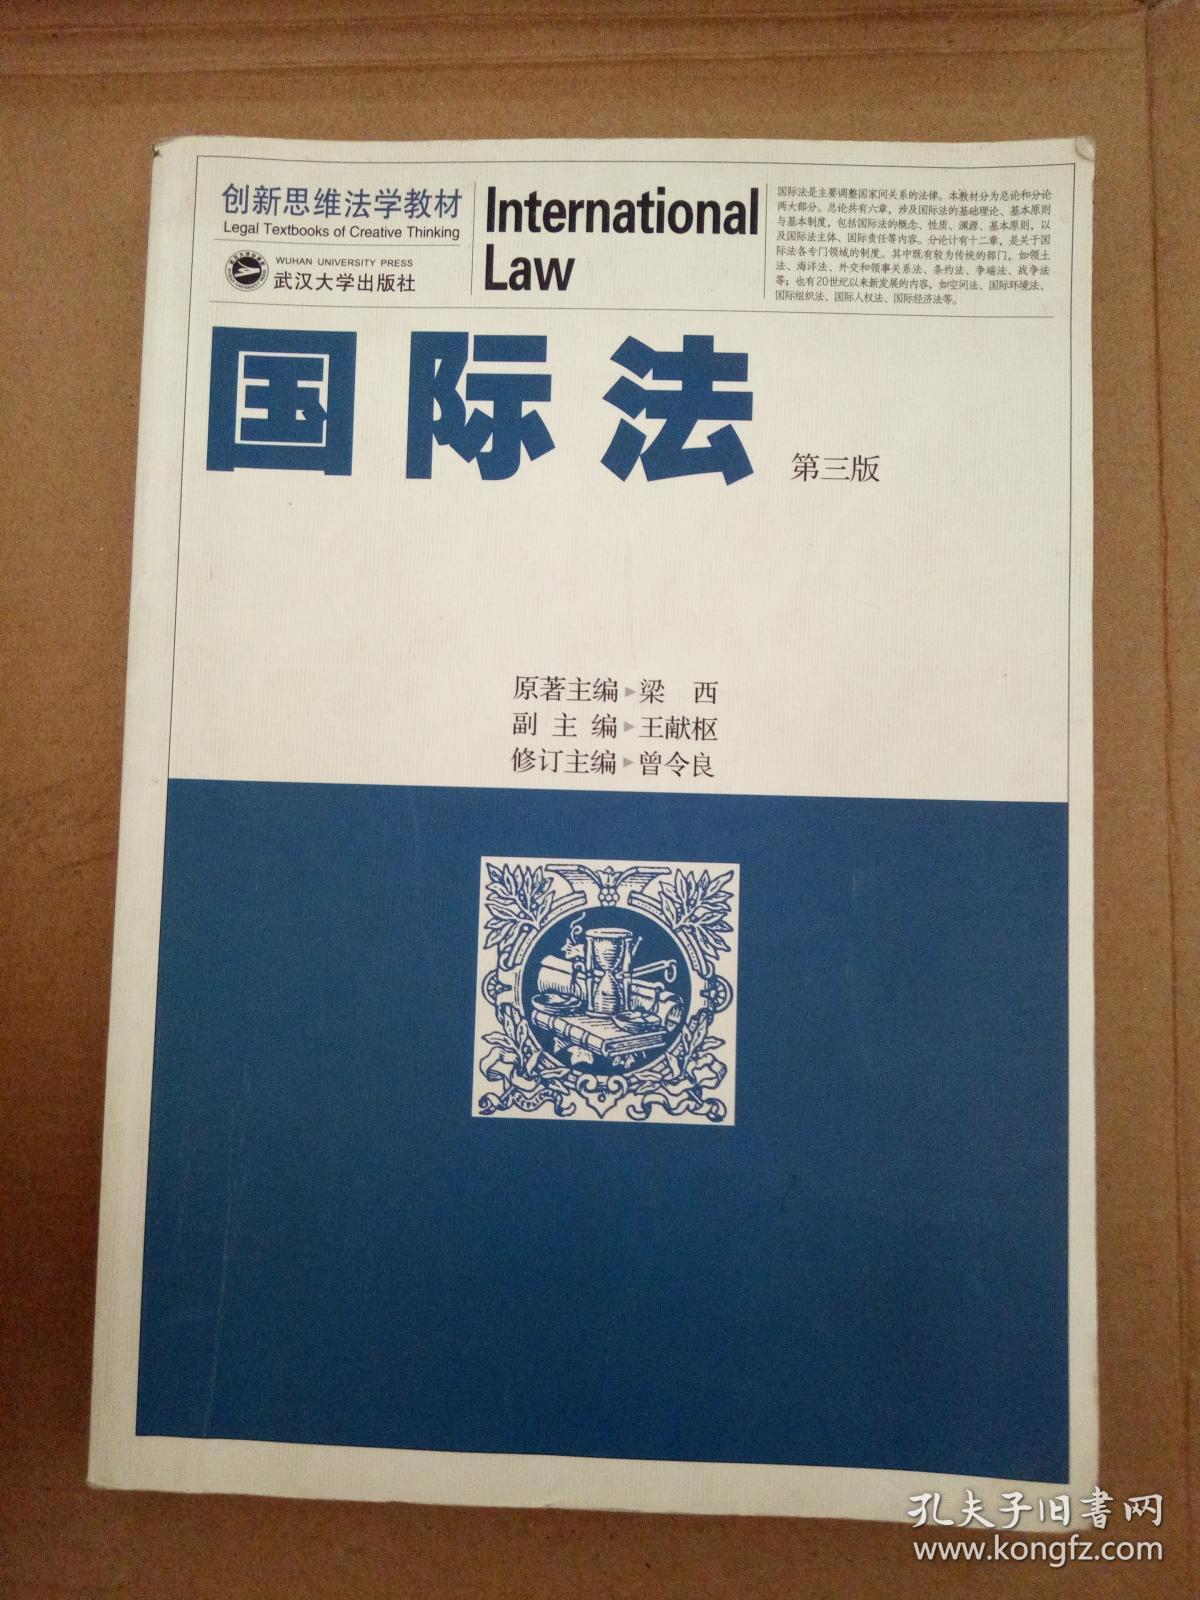 江东 国际法图片